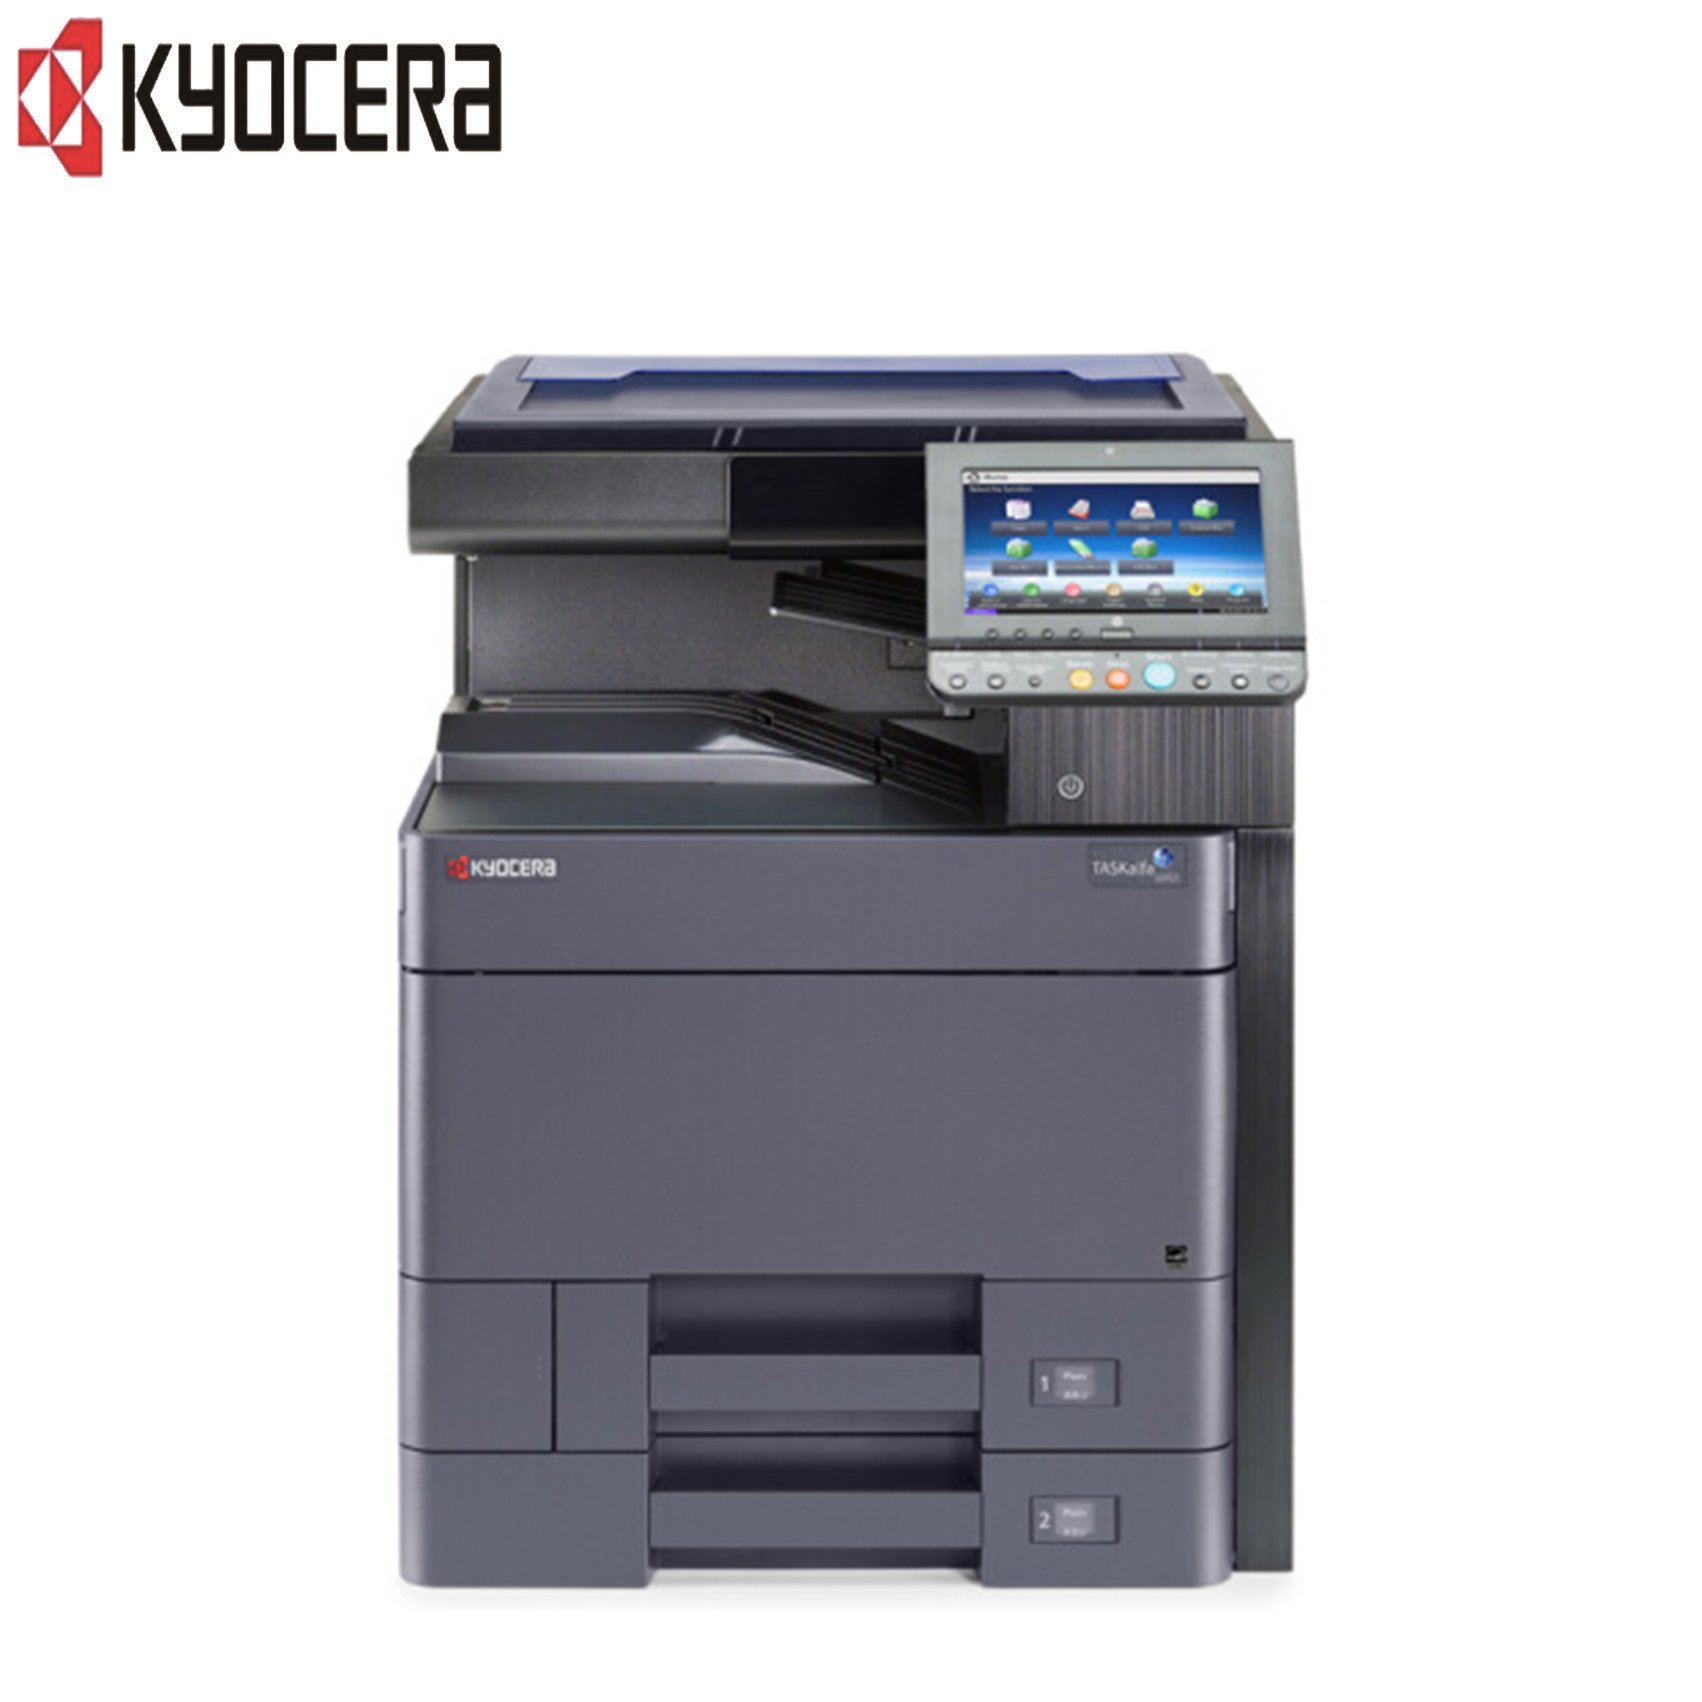 京瓷(KYOCERA)TASKalfa 6002i 高速黑白数码复合机 打印/复印/扫描